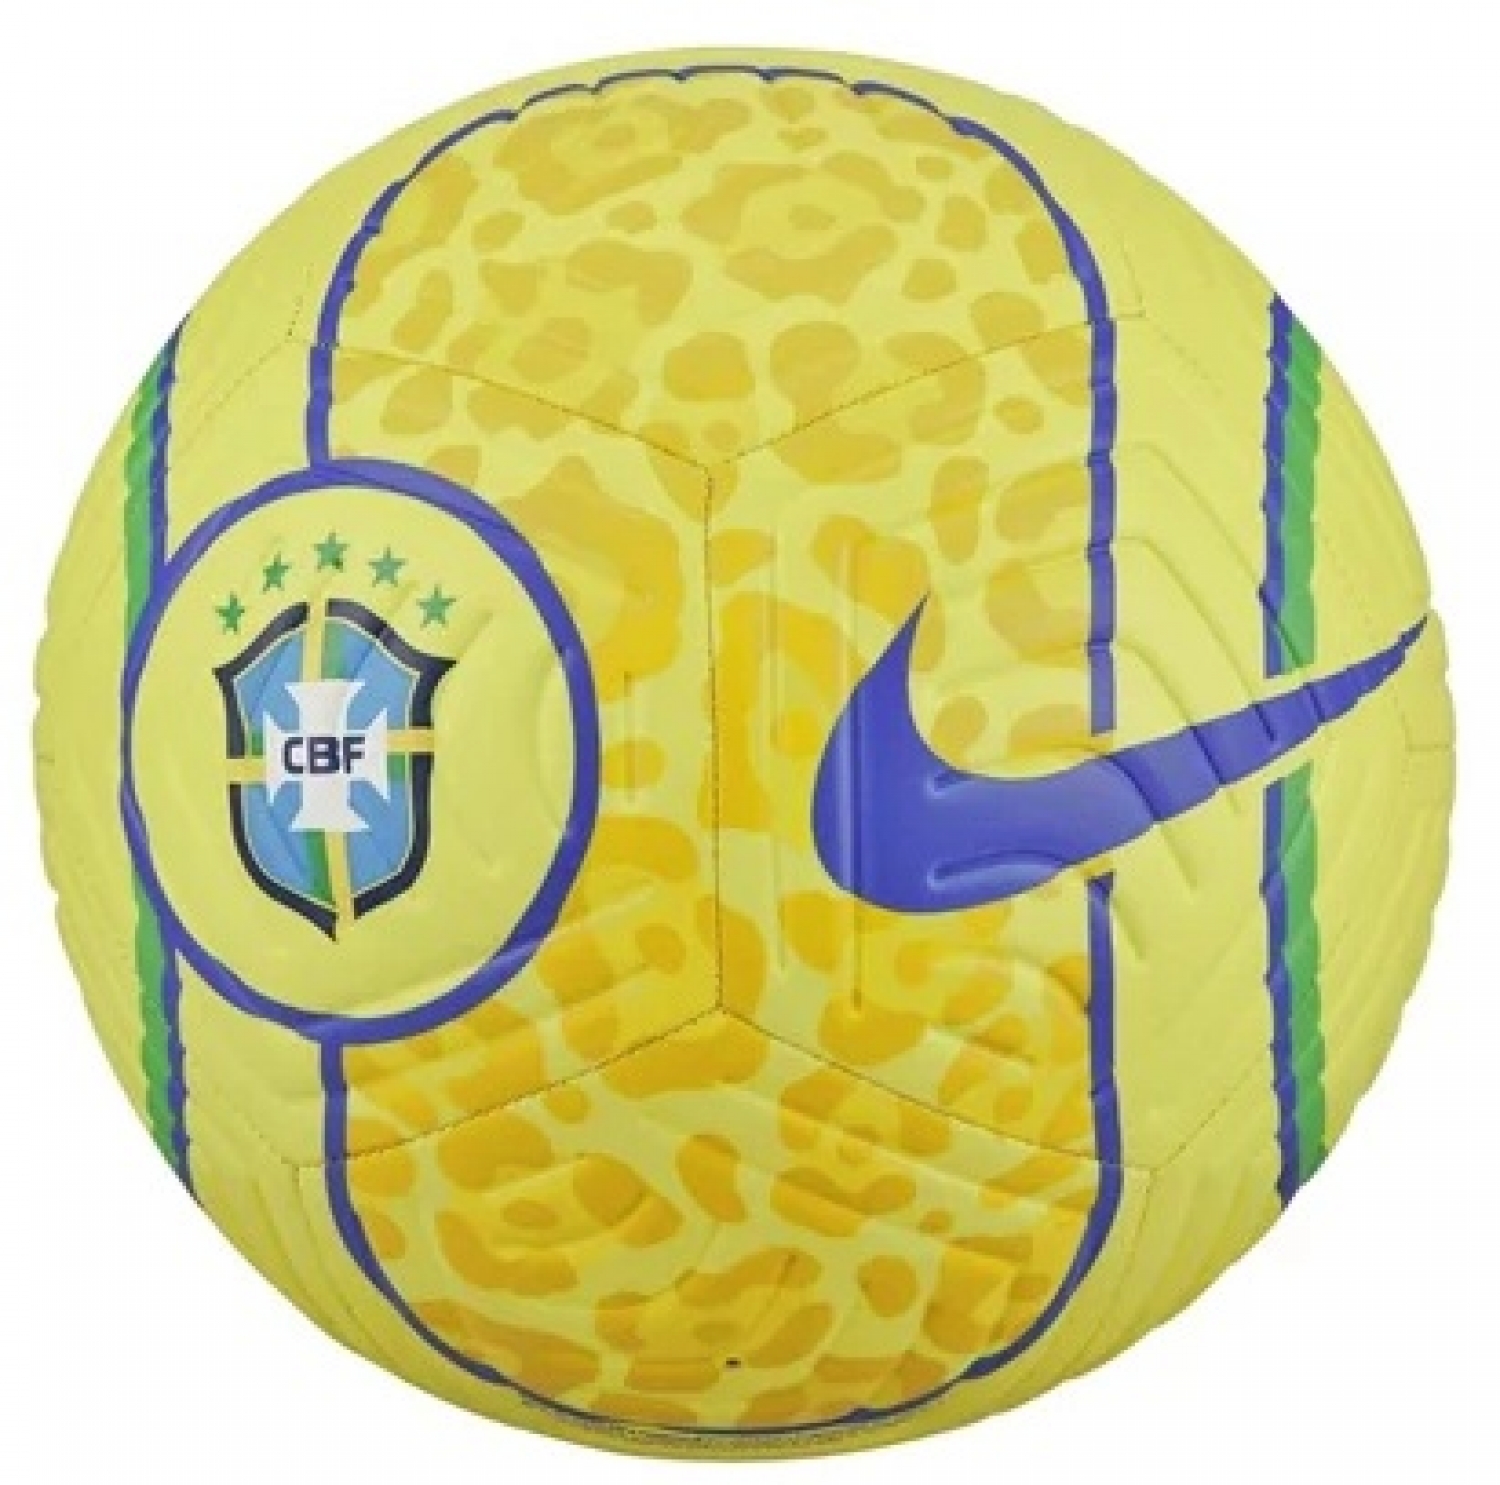 Nike Premier League Skills - Amarelo - Bola Pequena Futebol